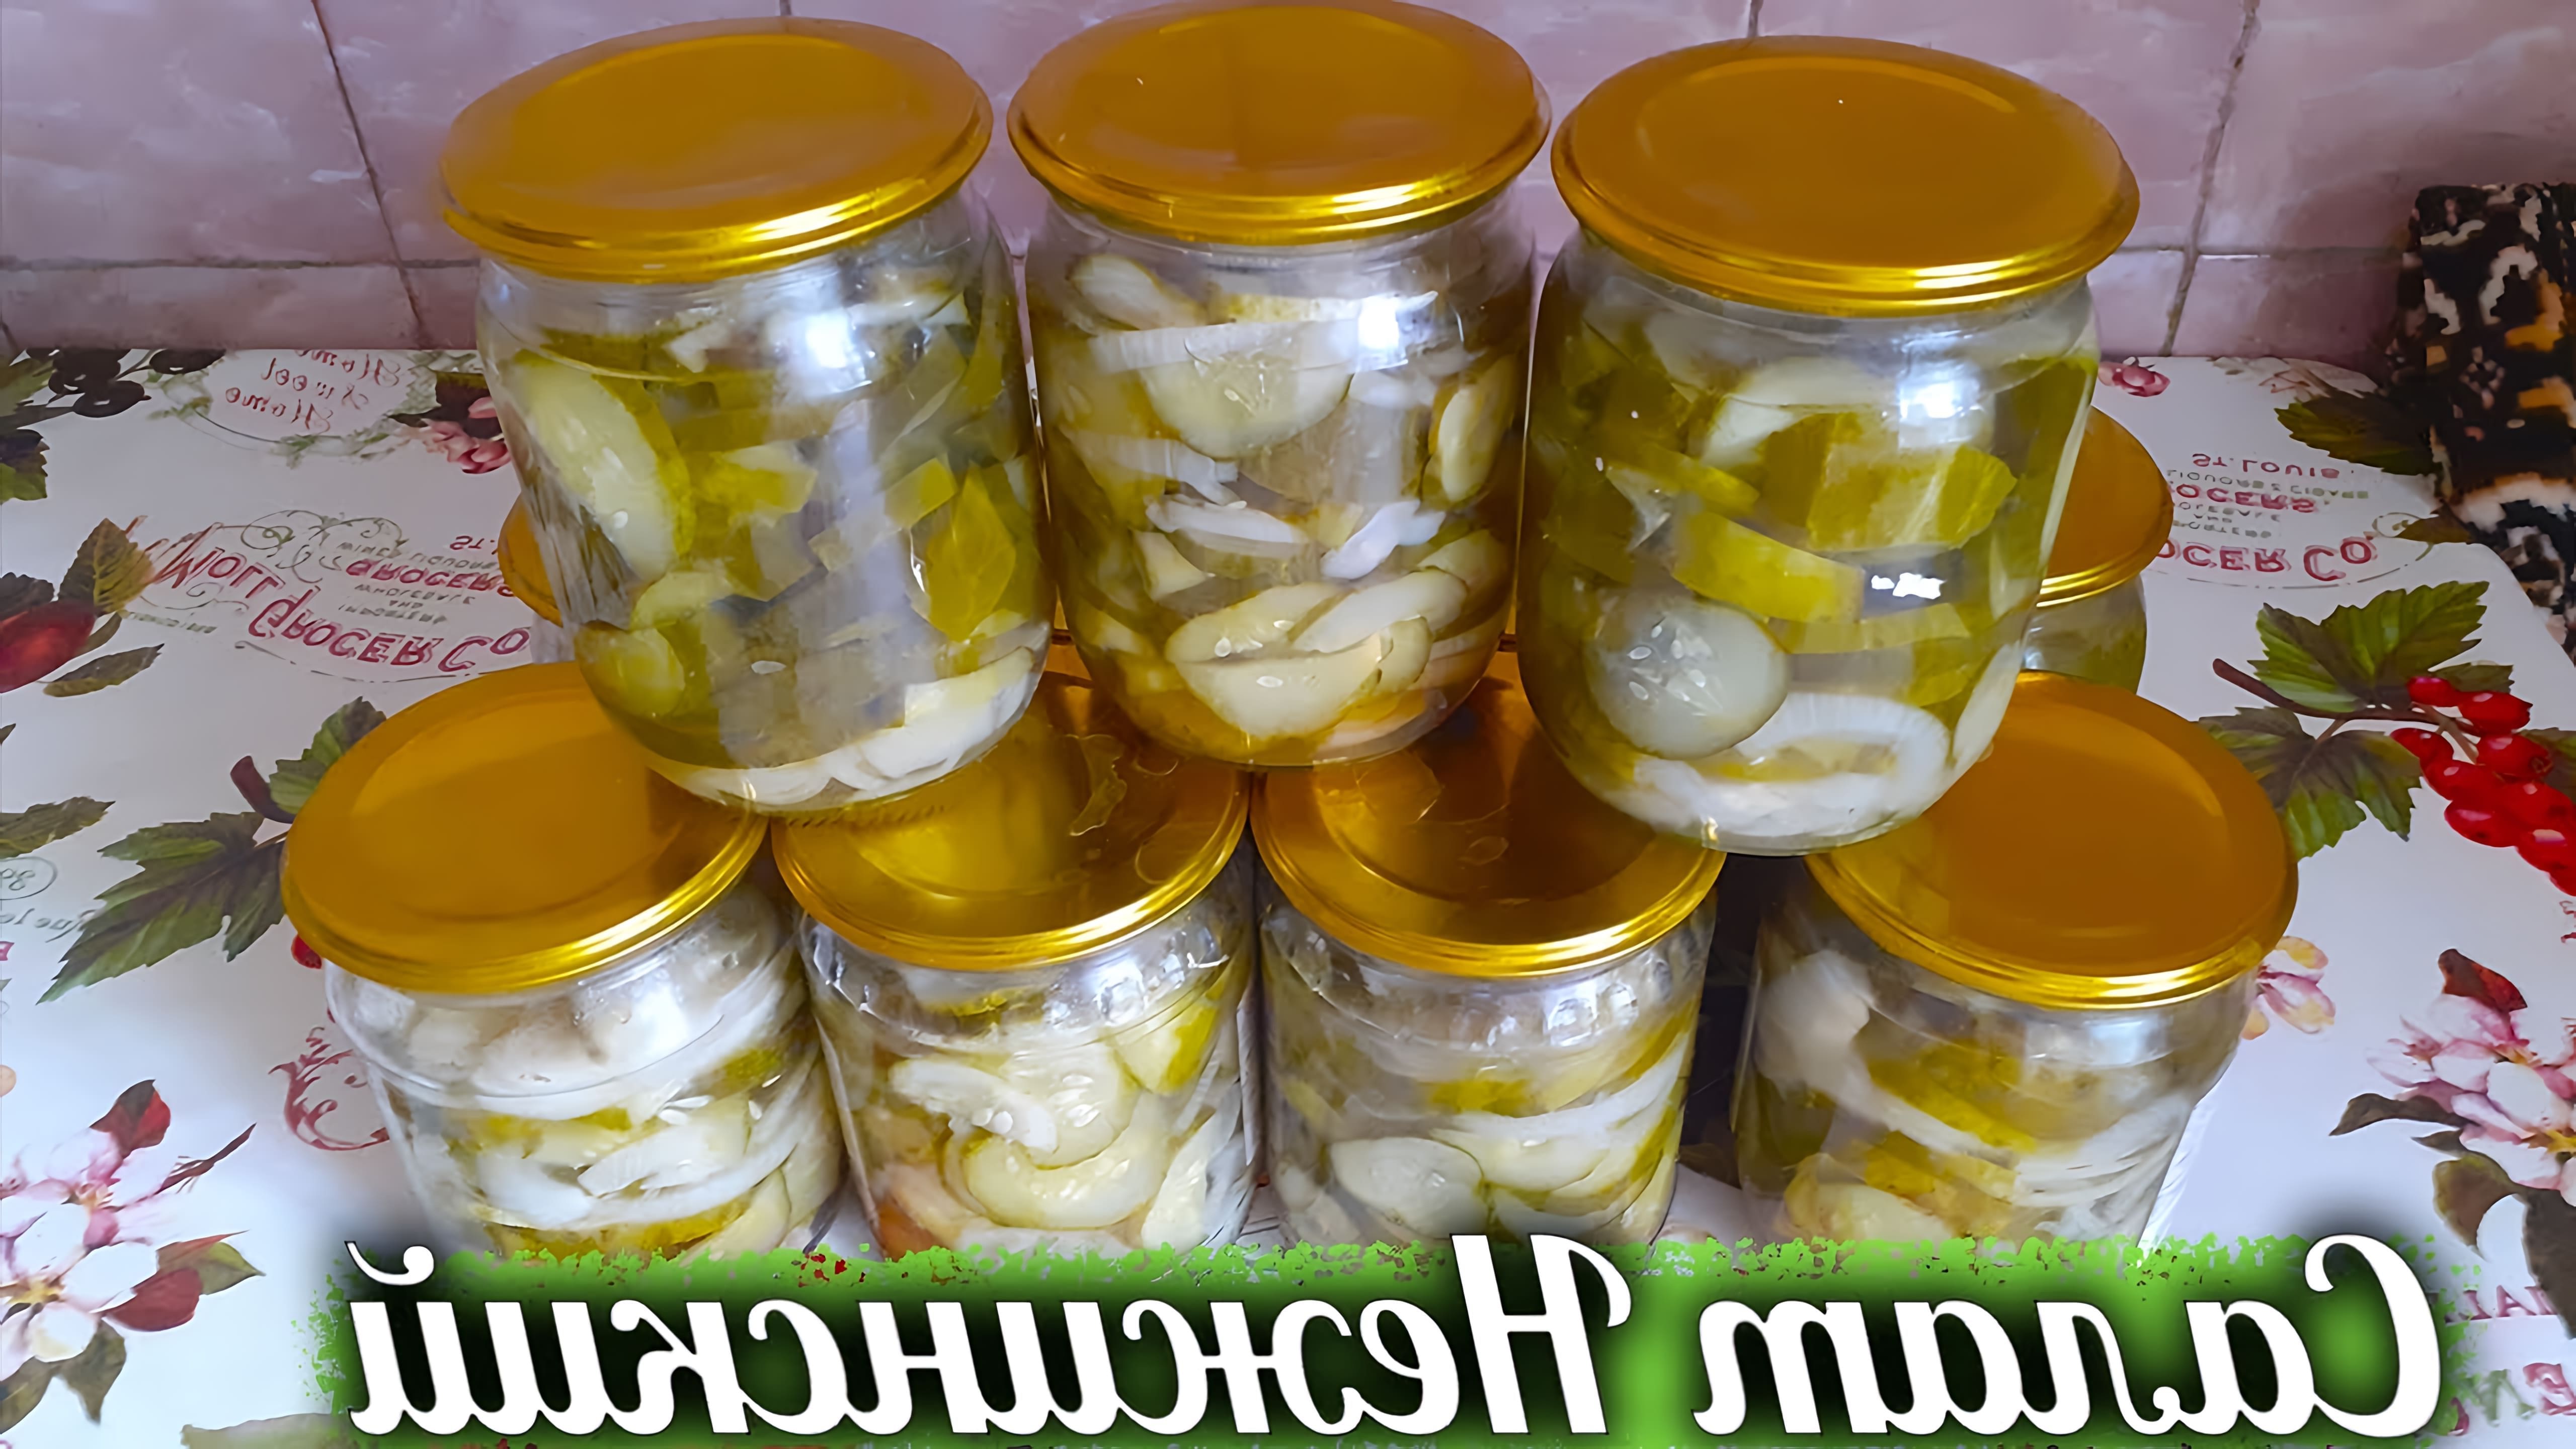 В этом видео демонстрируется процесс приготовления салата "Нежинский" на зиму